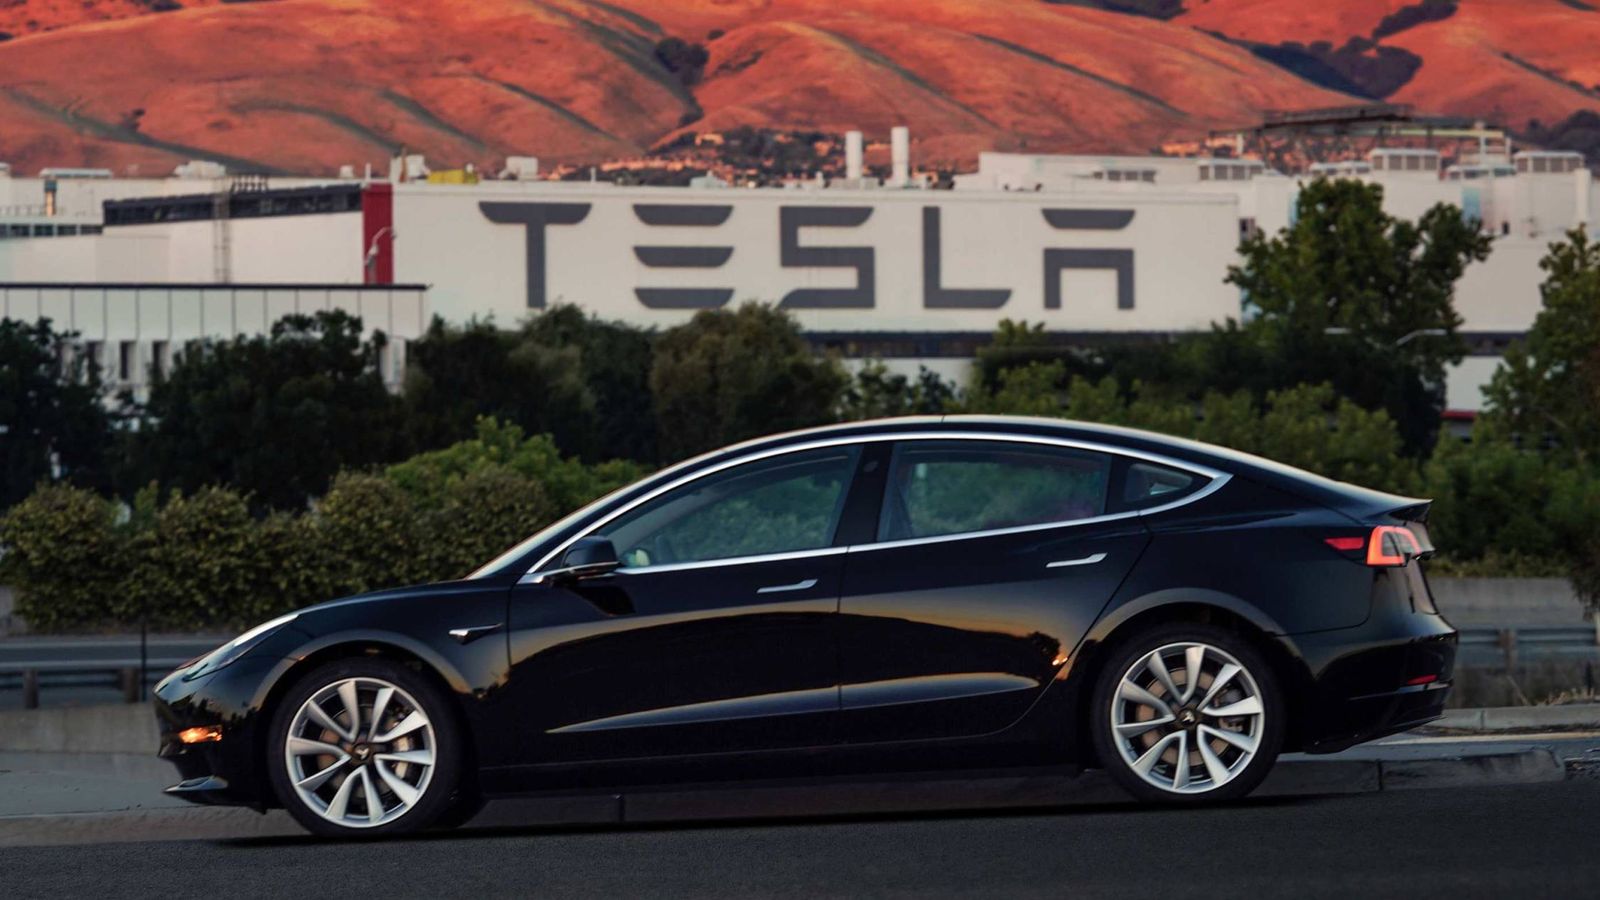 Foto: Model 3, el acceso a la marca Tesla desde 59.100 euros en el mercado español. 